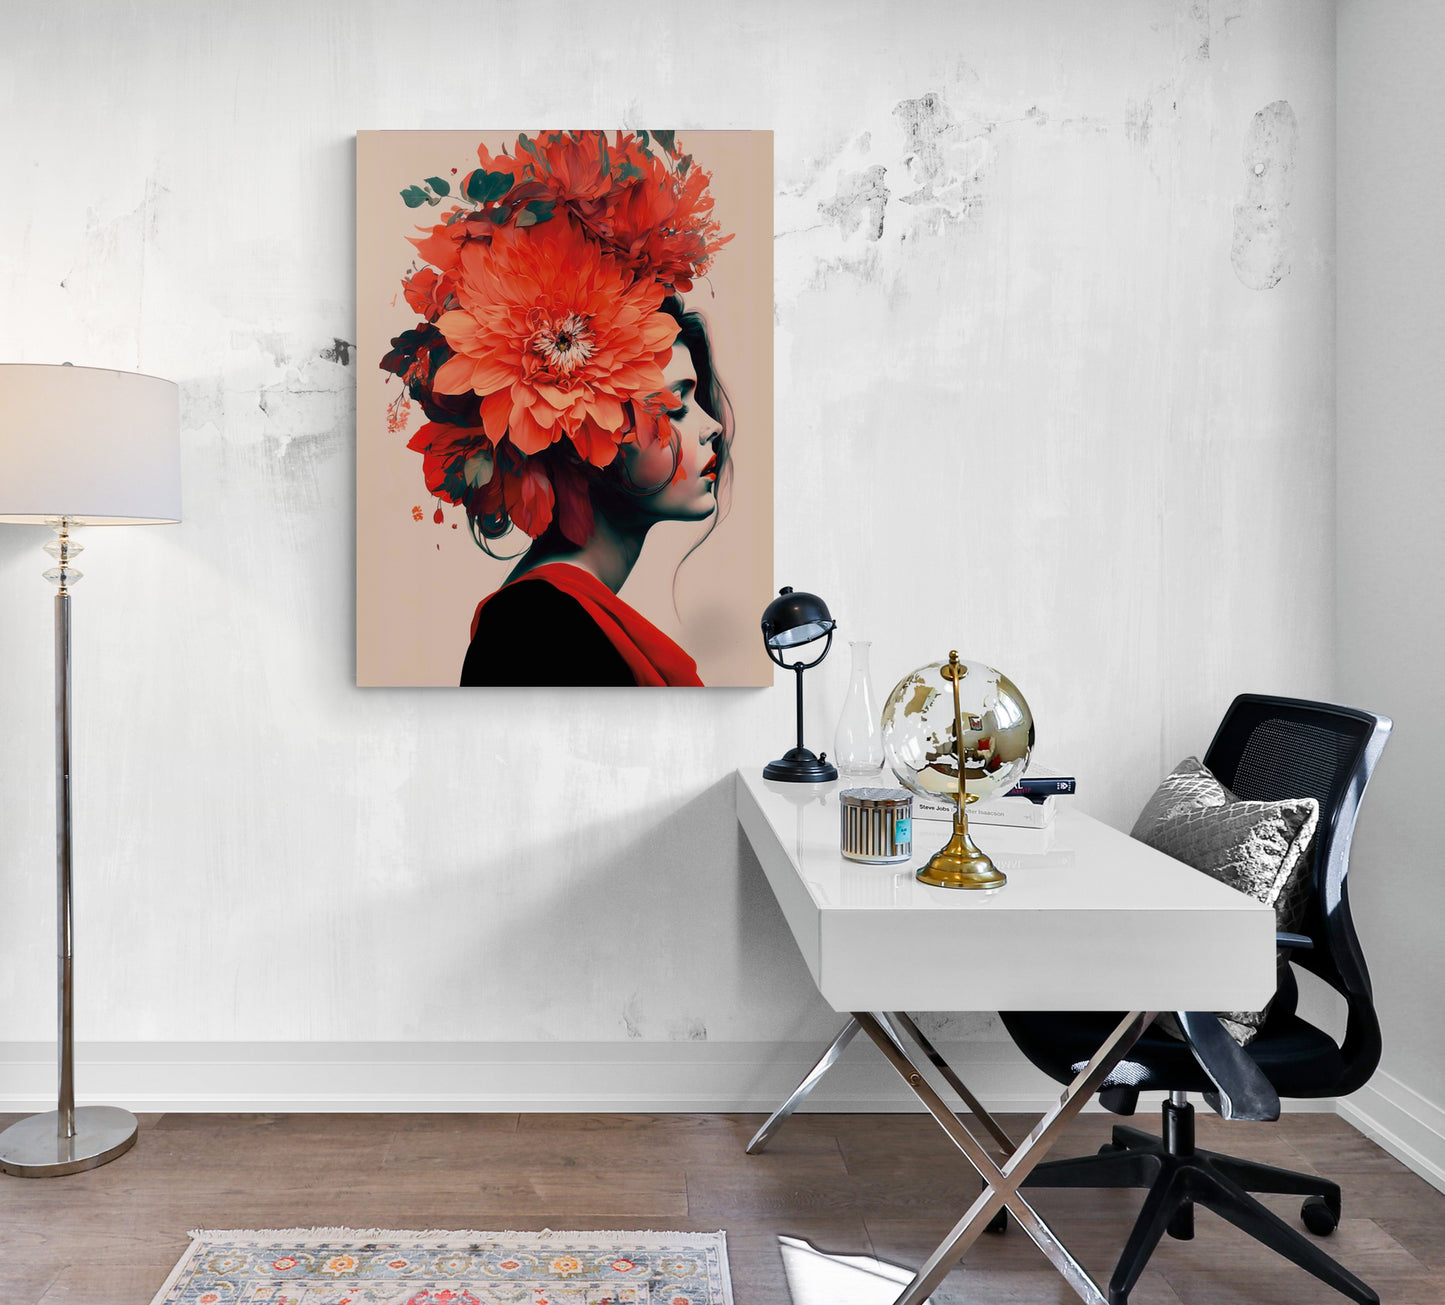 Décoration intérieure pour bureau, femme, fleurs colorées, expression provocante.